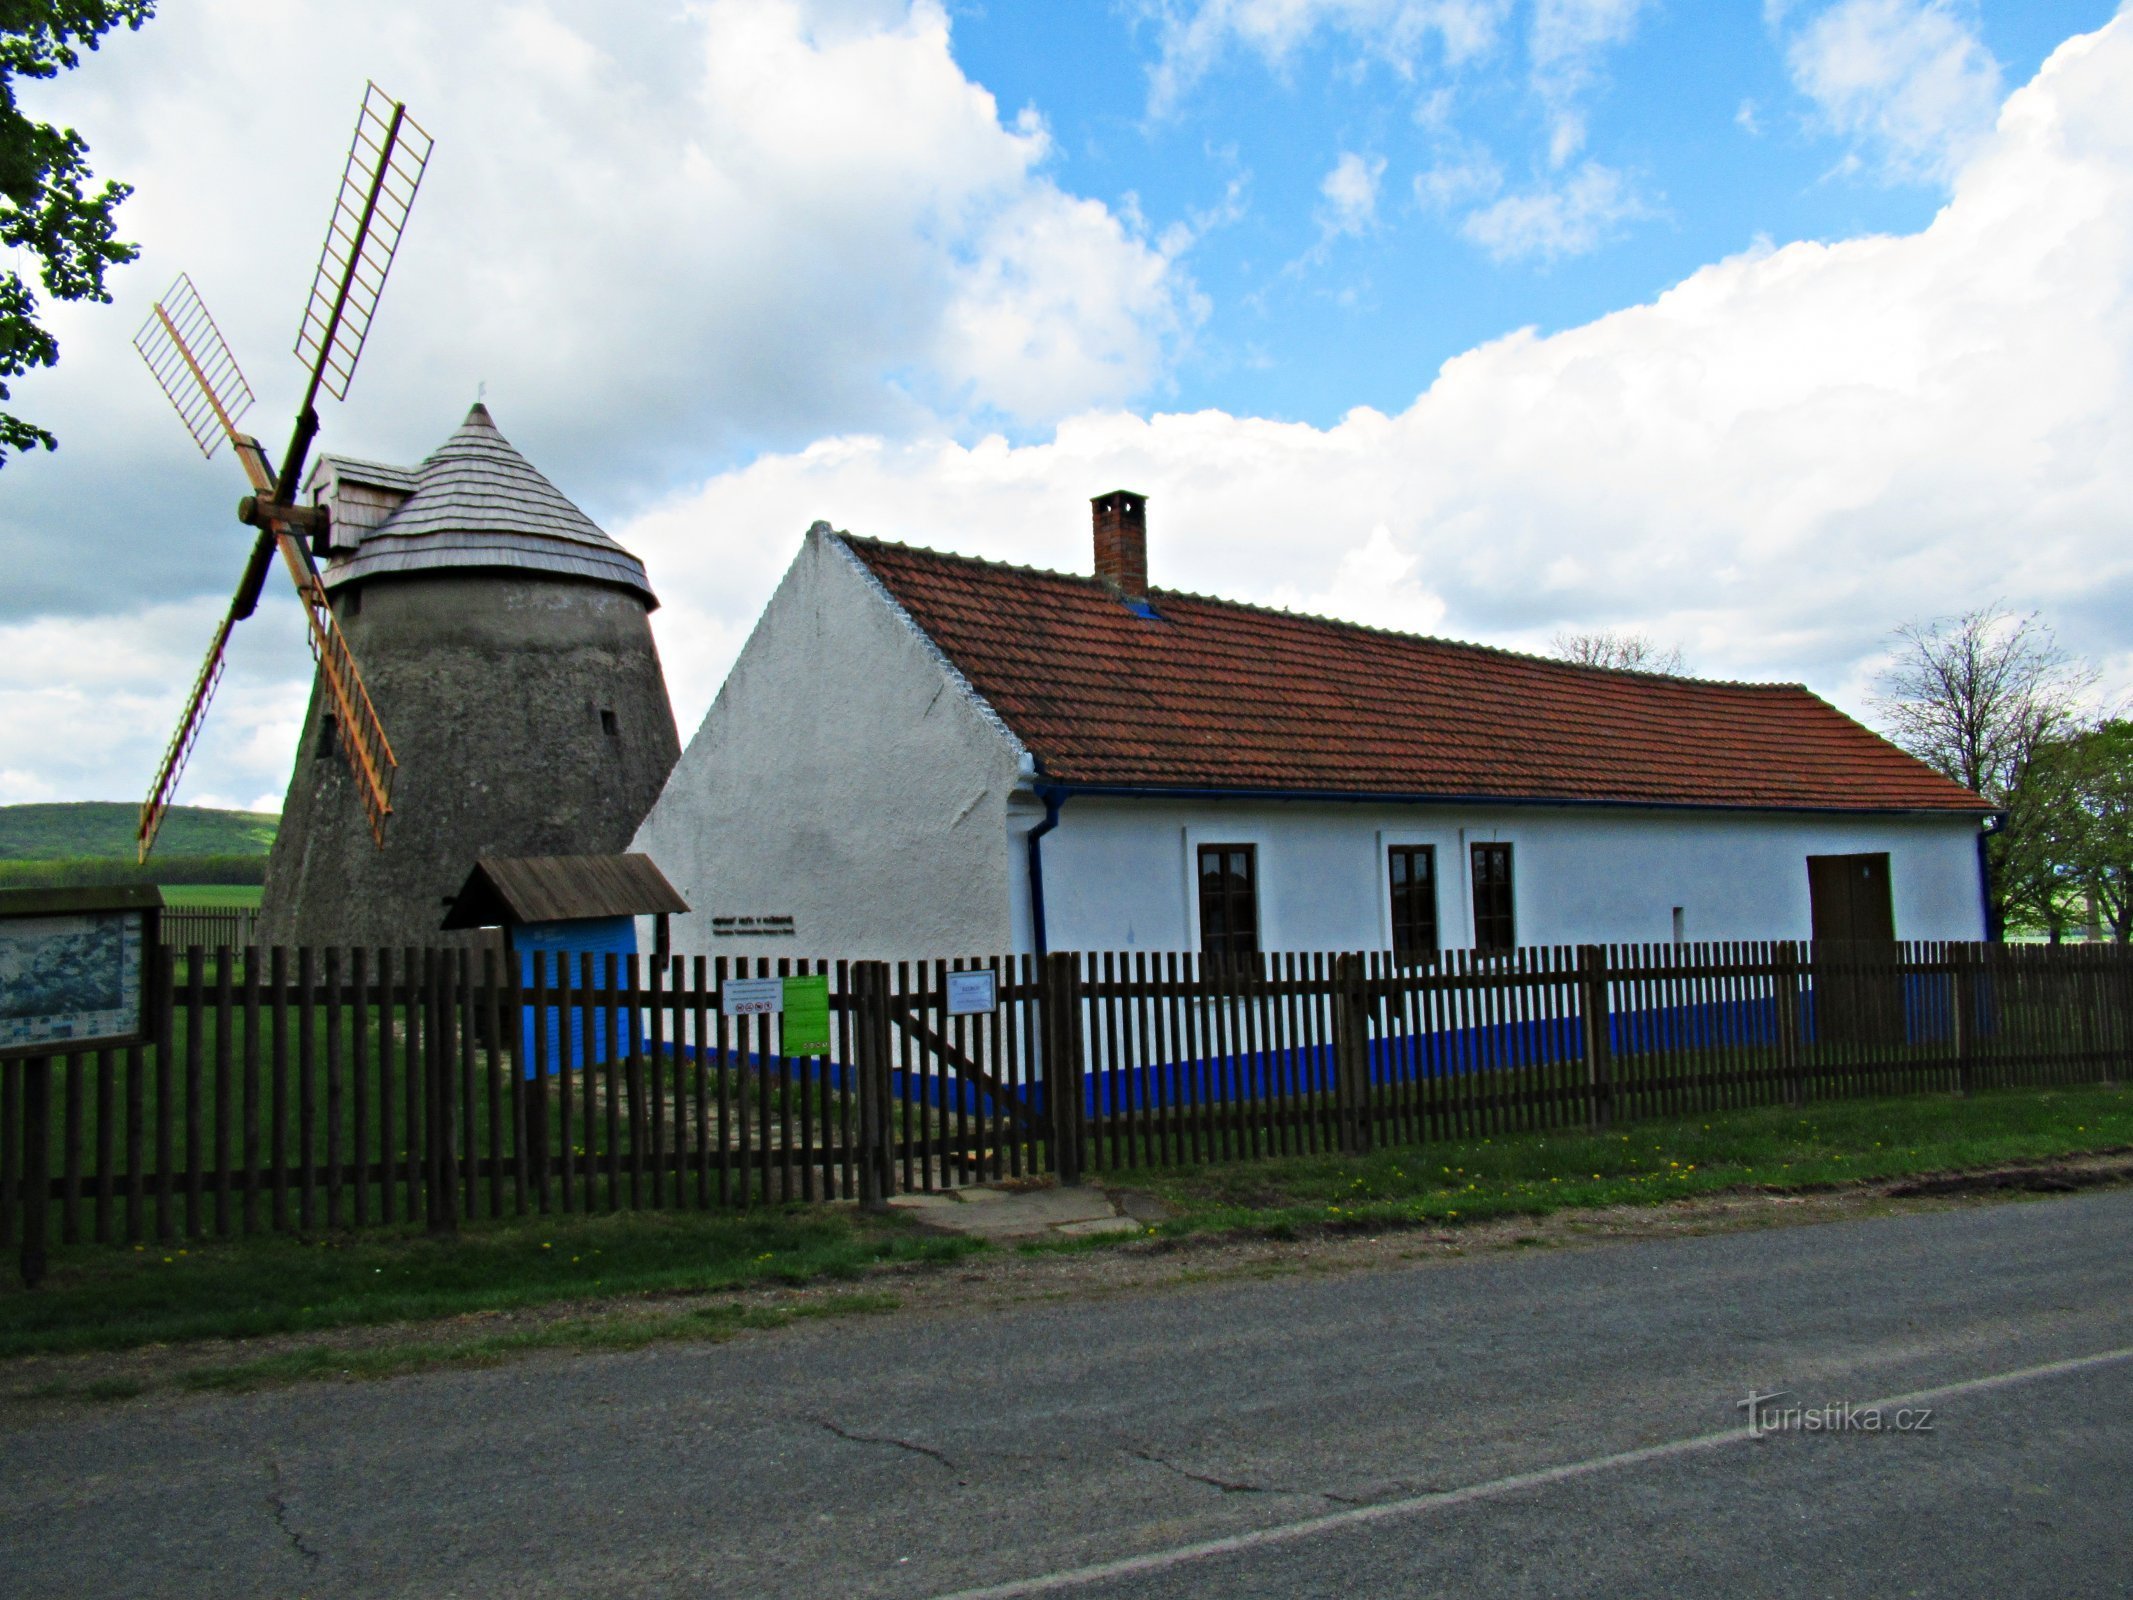 Khu vực cối xay gió phía trên làng Kuželov ở Slovácko